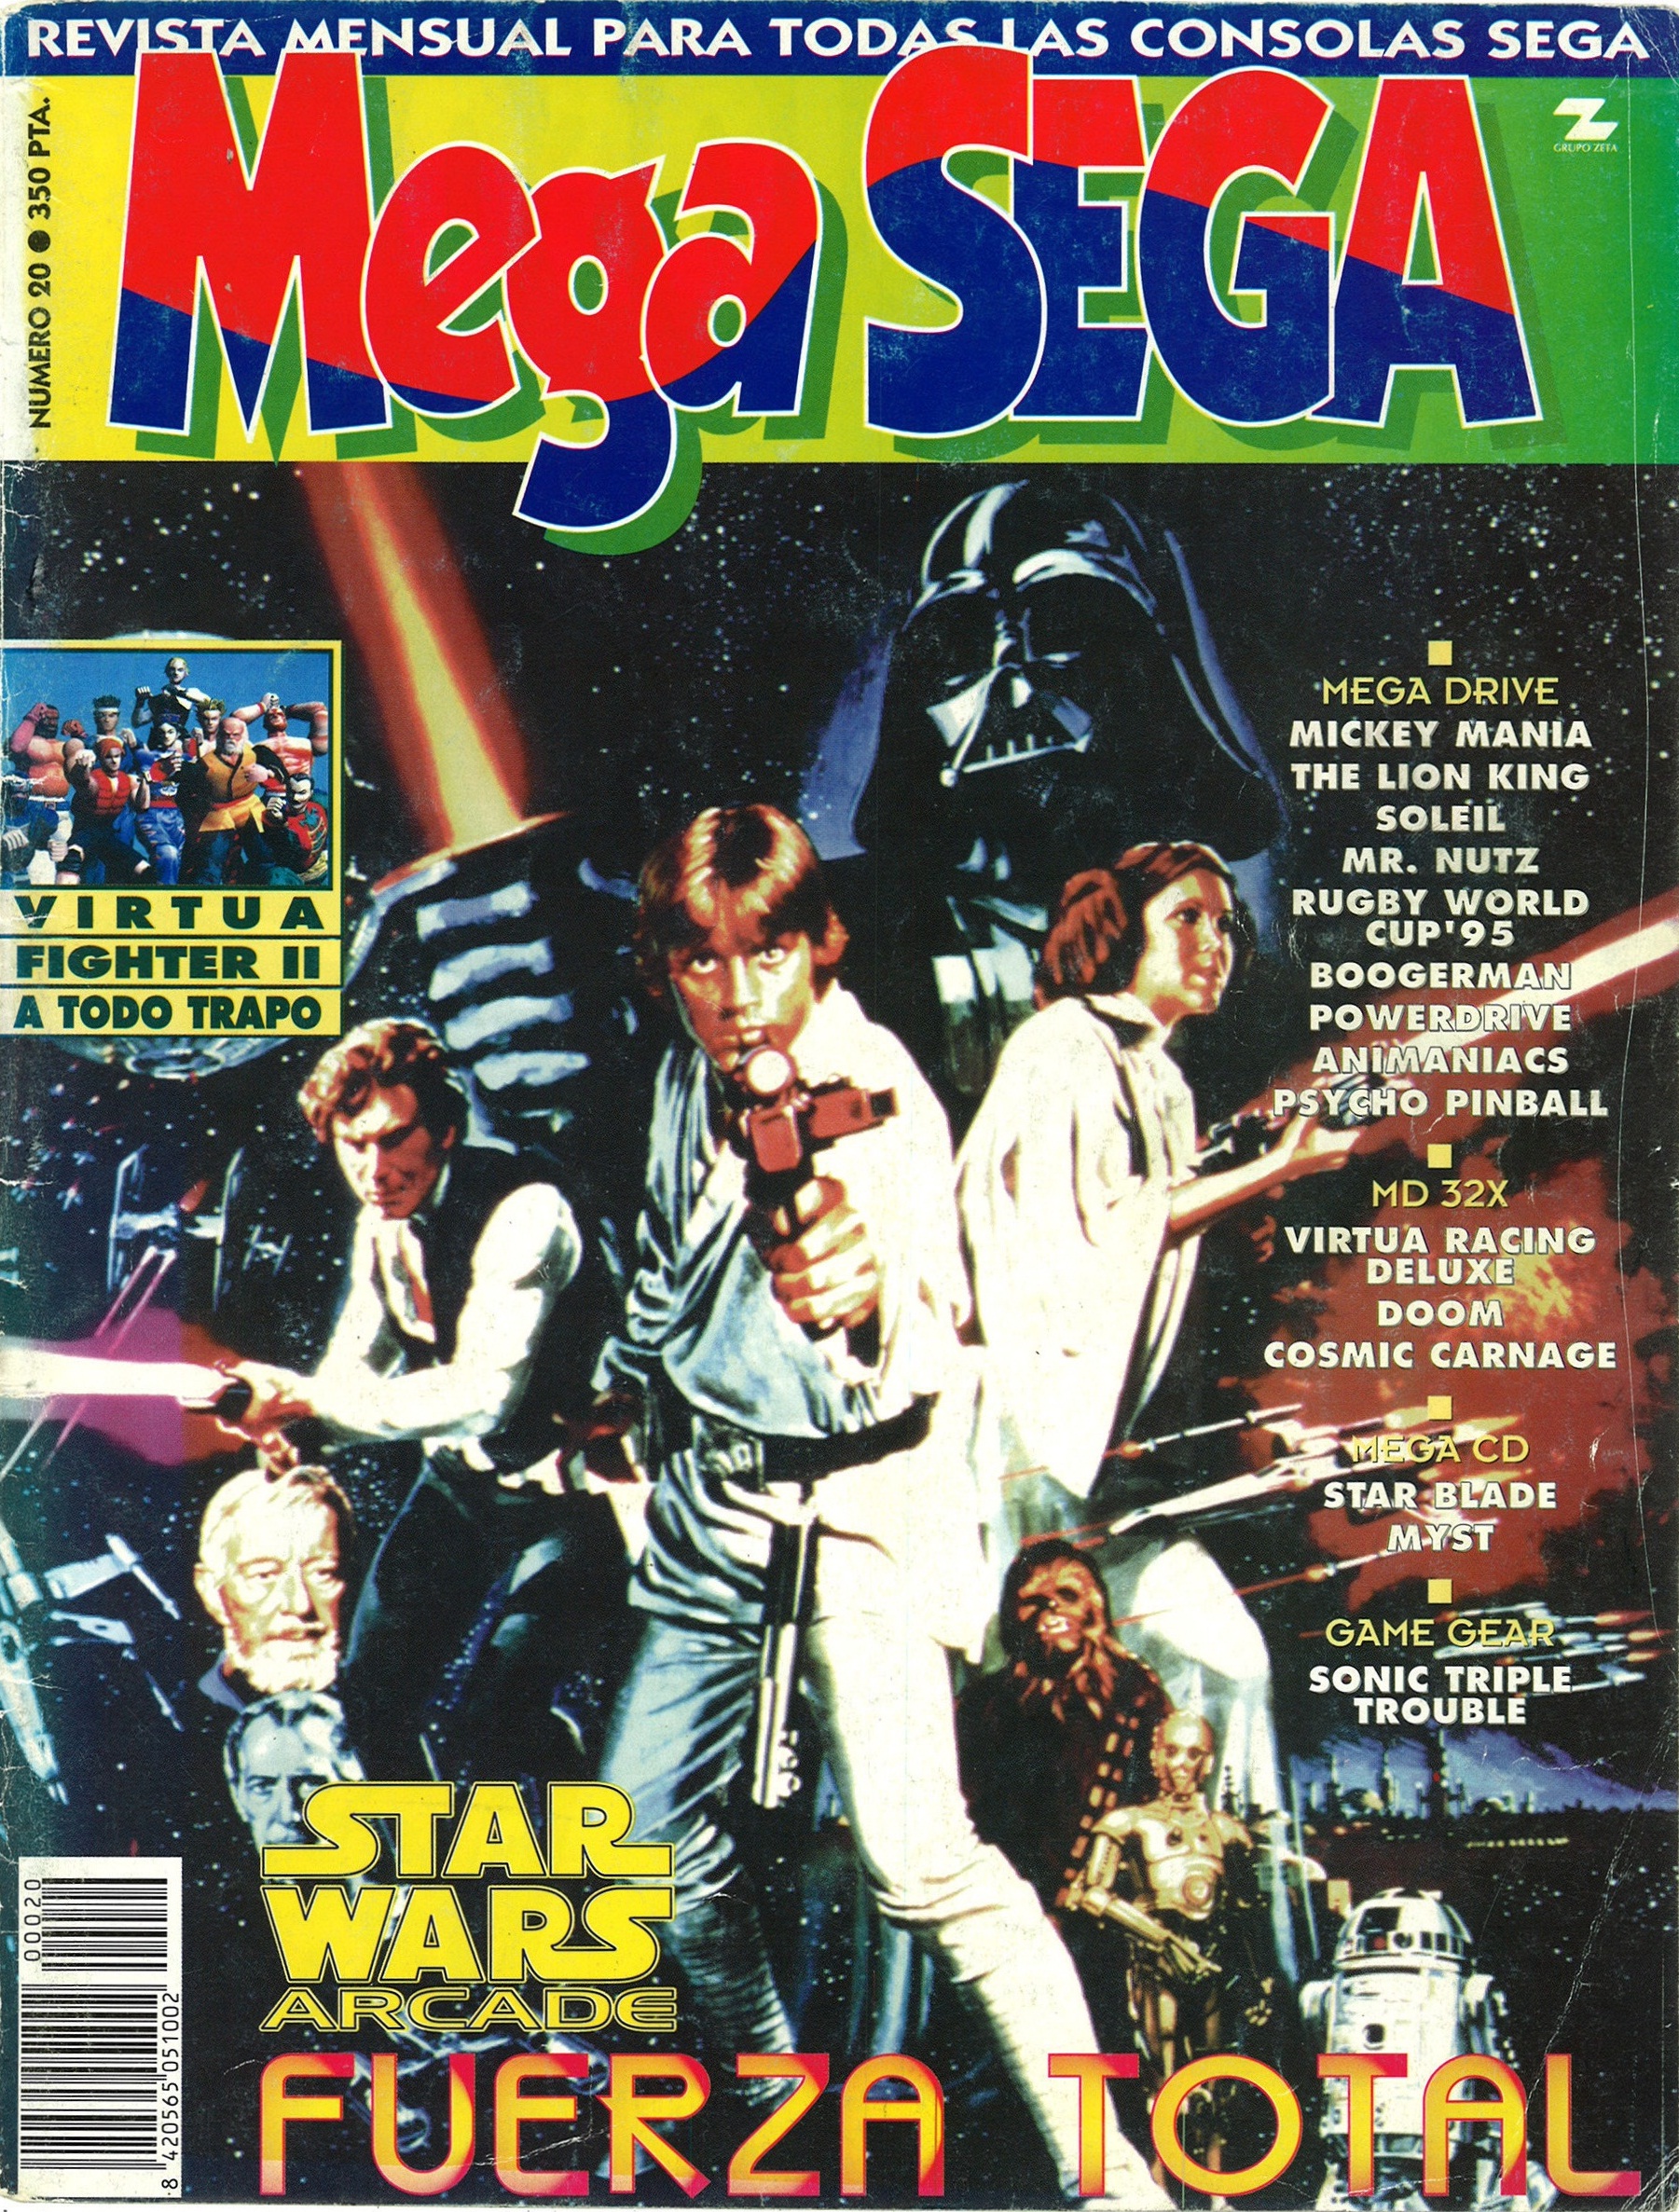 MegaSega 20 cover.jpg